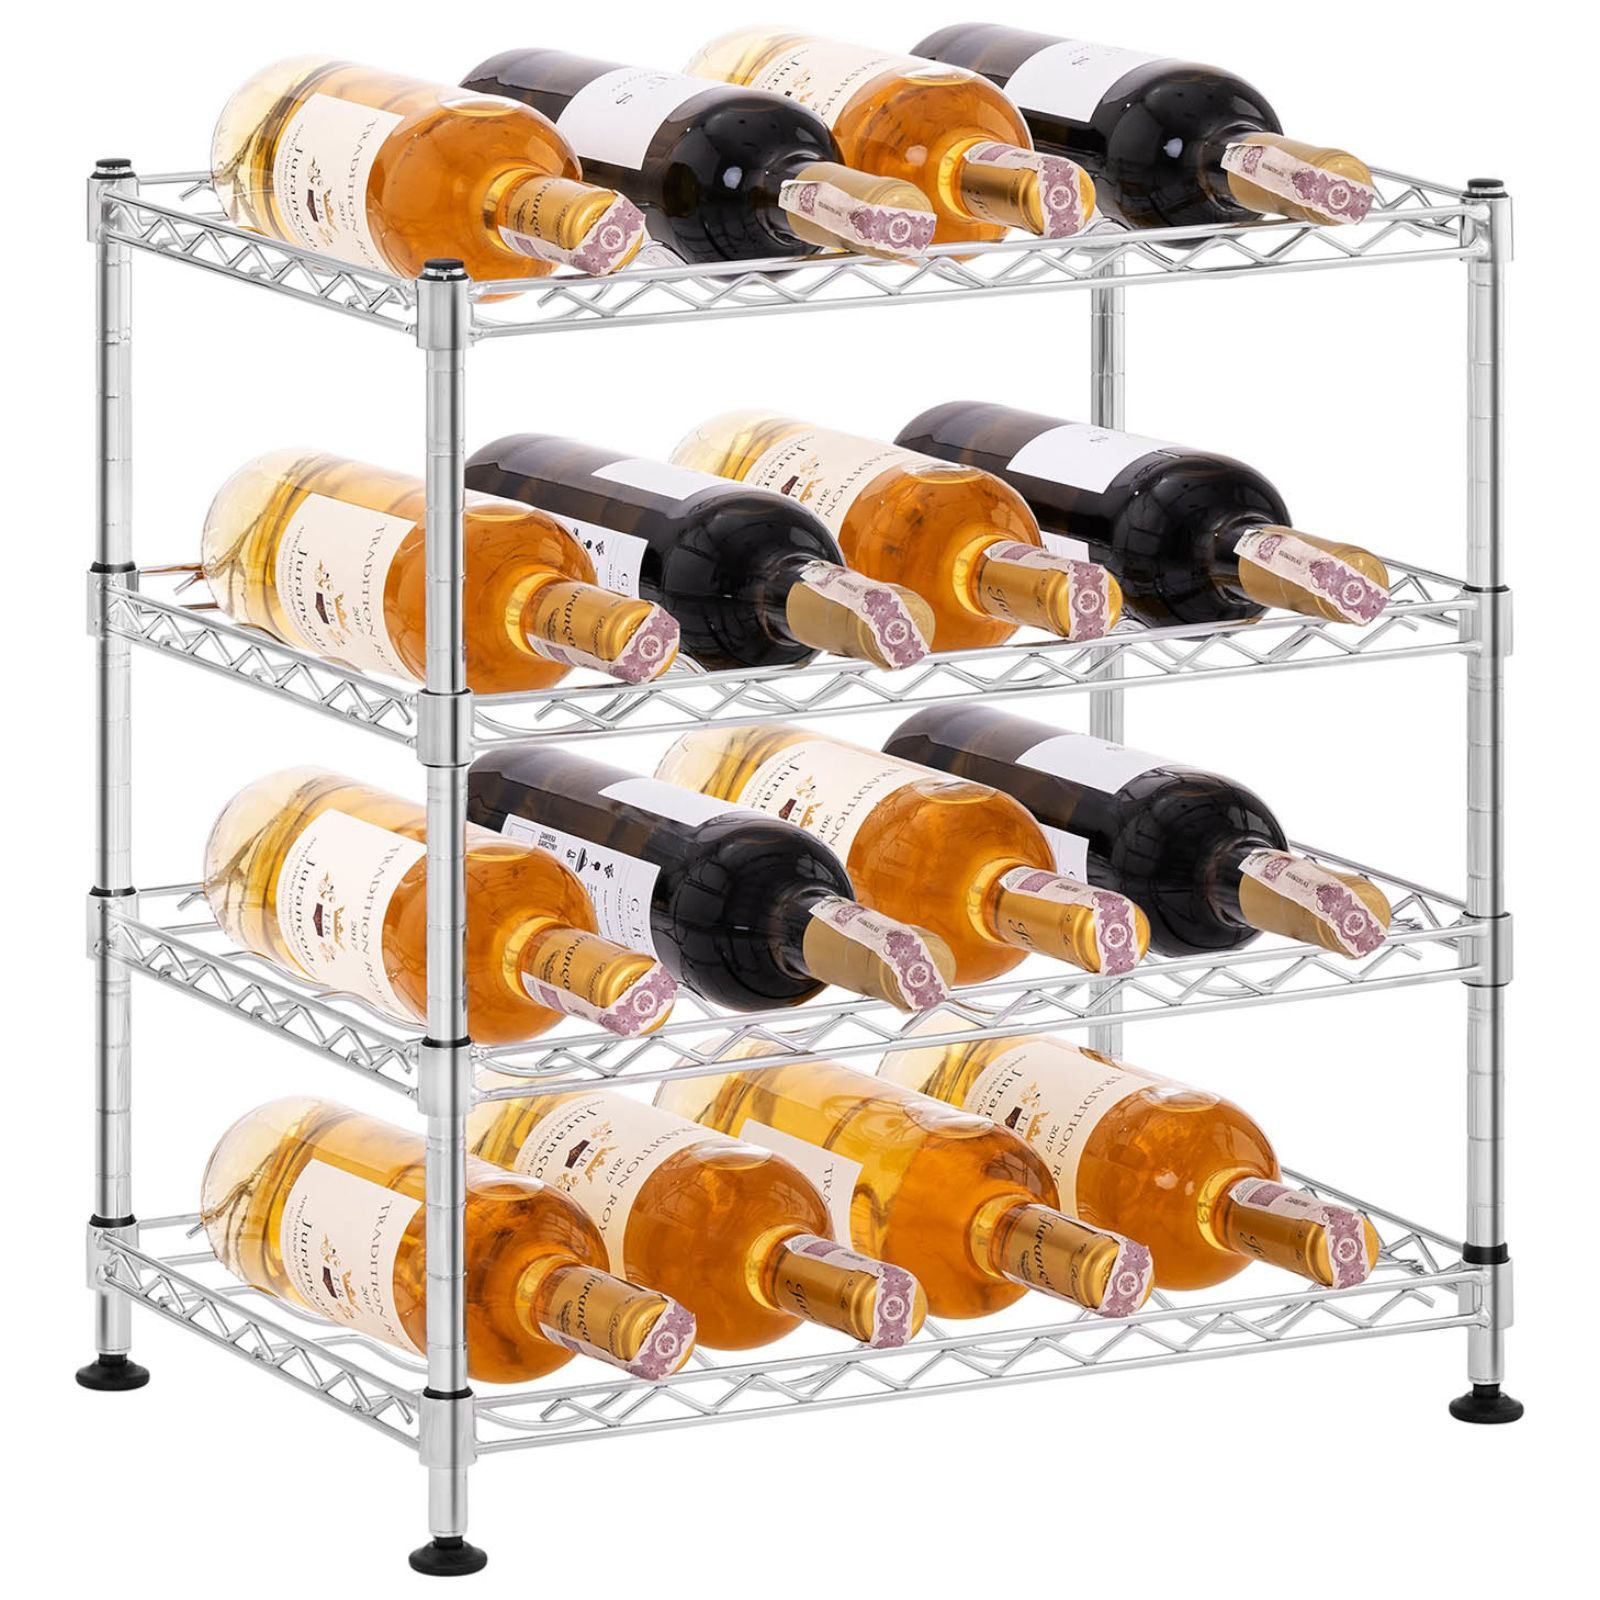 Regał stojak na butelki z winem metalowy 4 półki 45 x 30 x 47 cm na 16